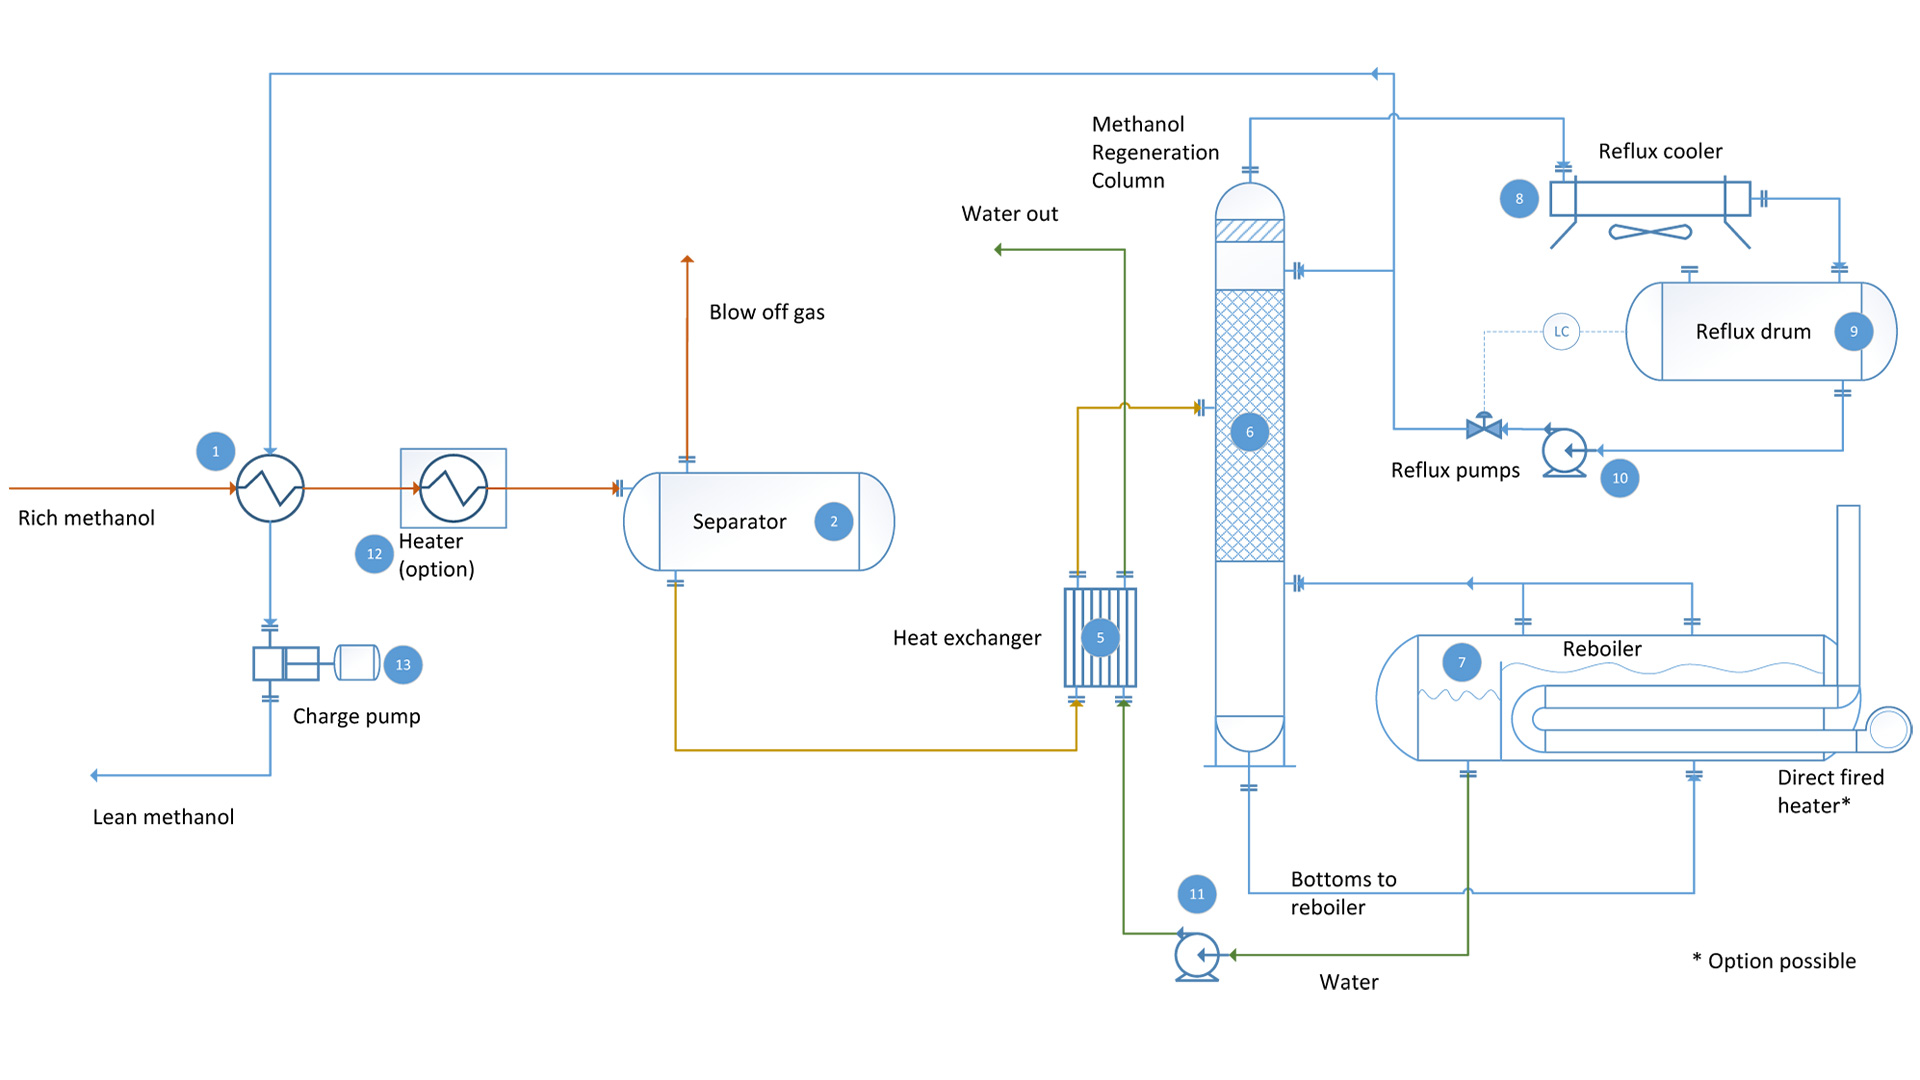 Pic. 3 Methanol regeneration unit Flow diagram